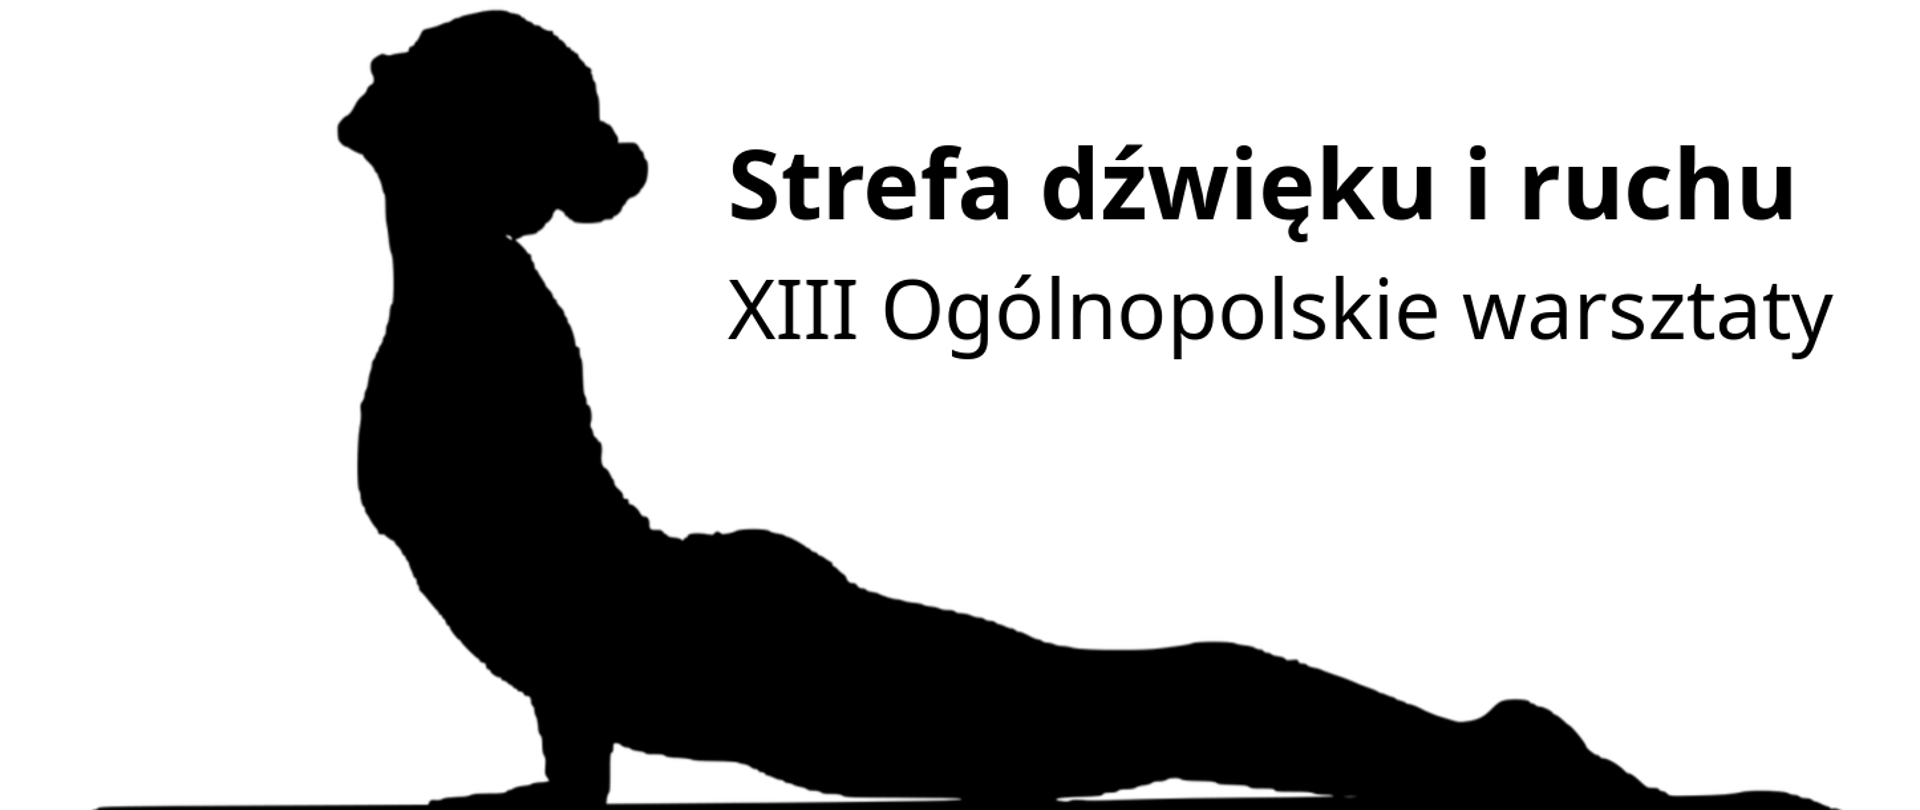 grafika przedstawia na białym tle u góry czarny napis strefa dźwięku i ruchu 13 ogólnopolskie warsztaty, a poniżej czarną półleżącą sylwetkę kobiety podpartej dłońmi na macie gimnastycznej